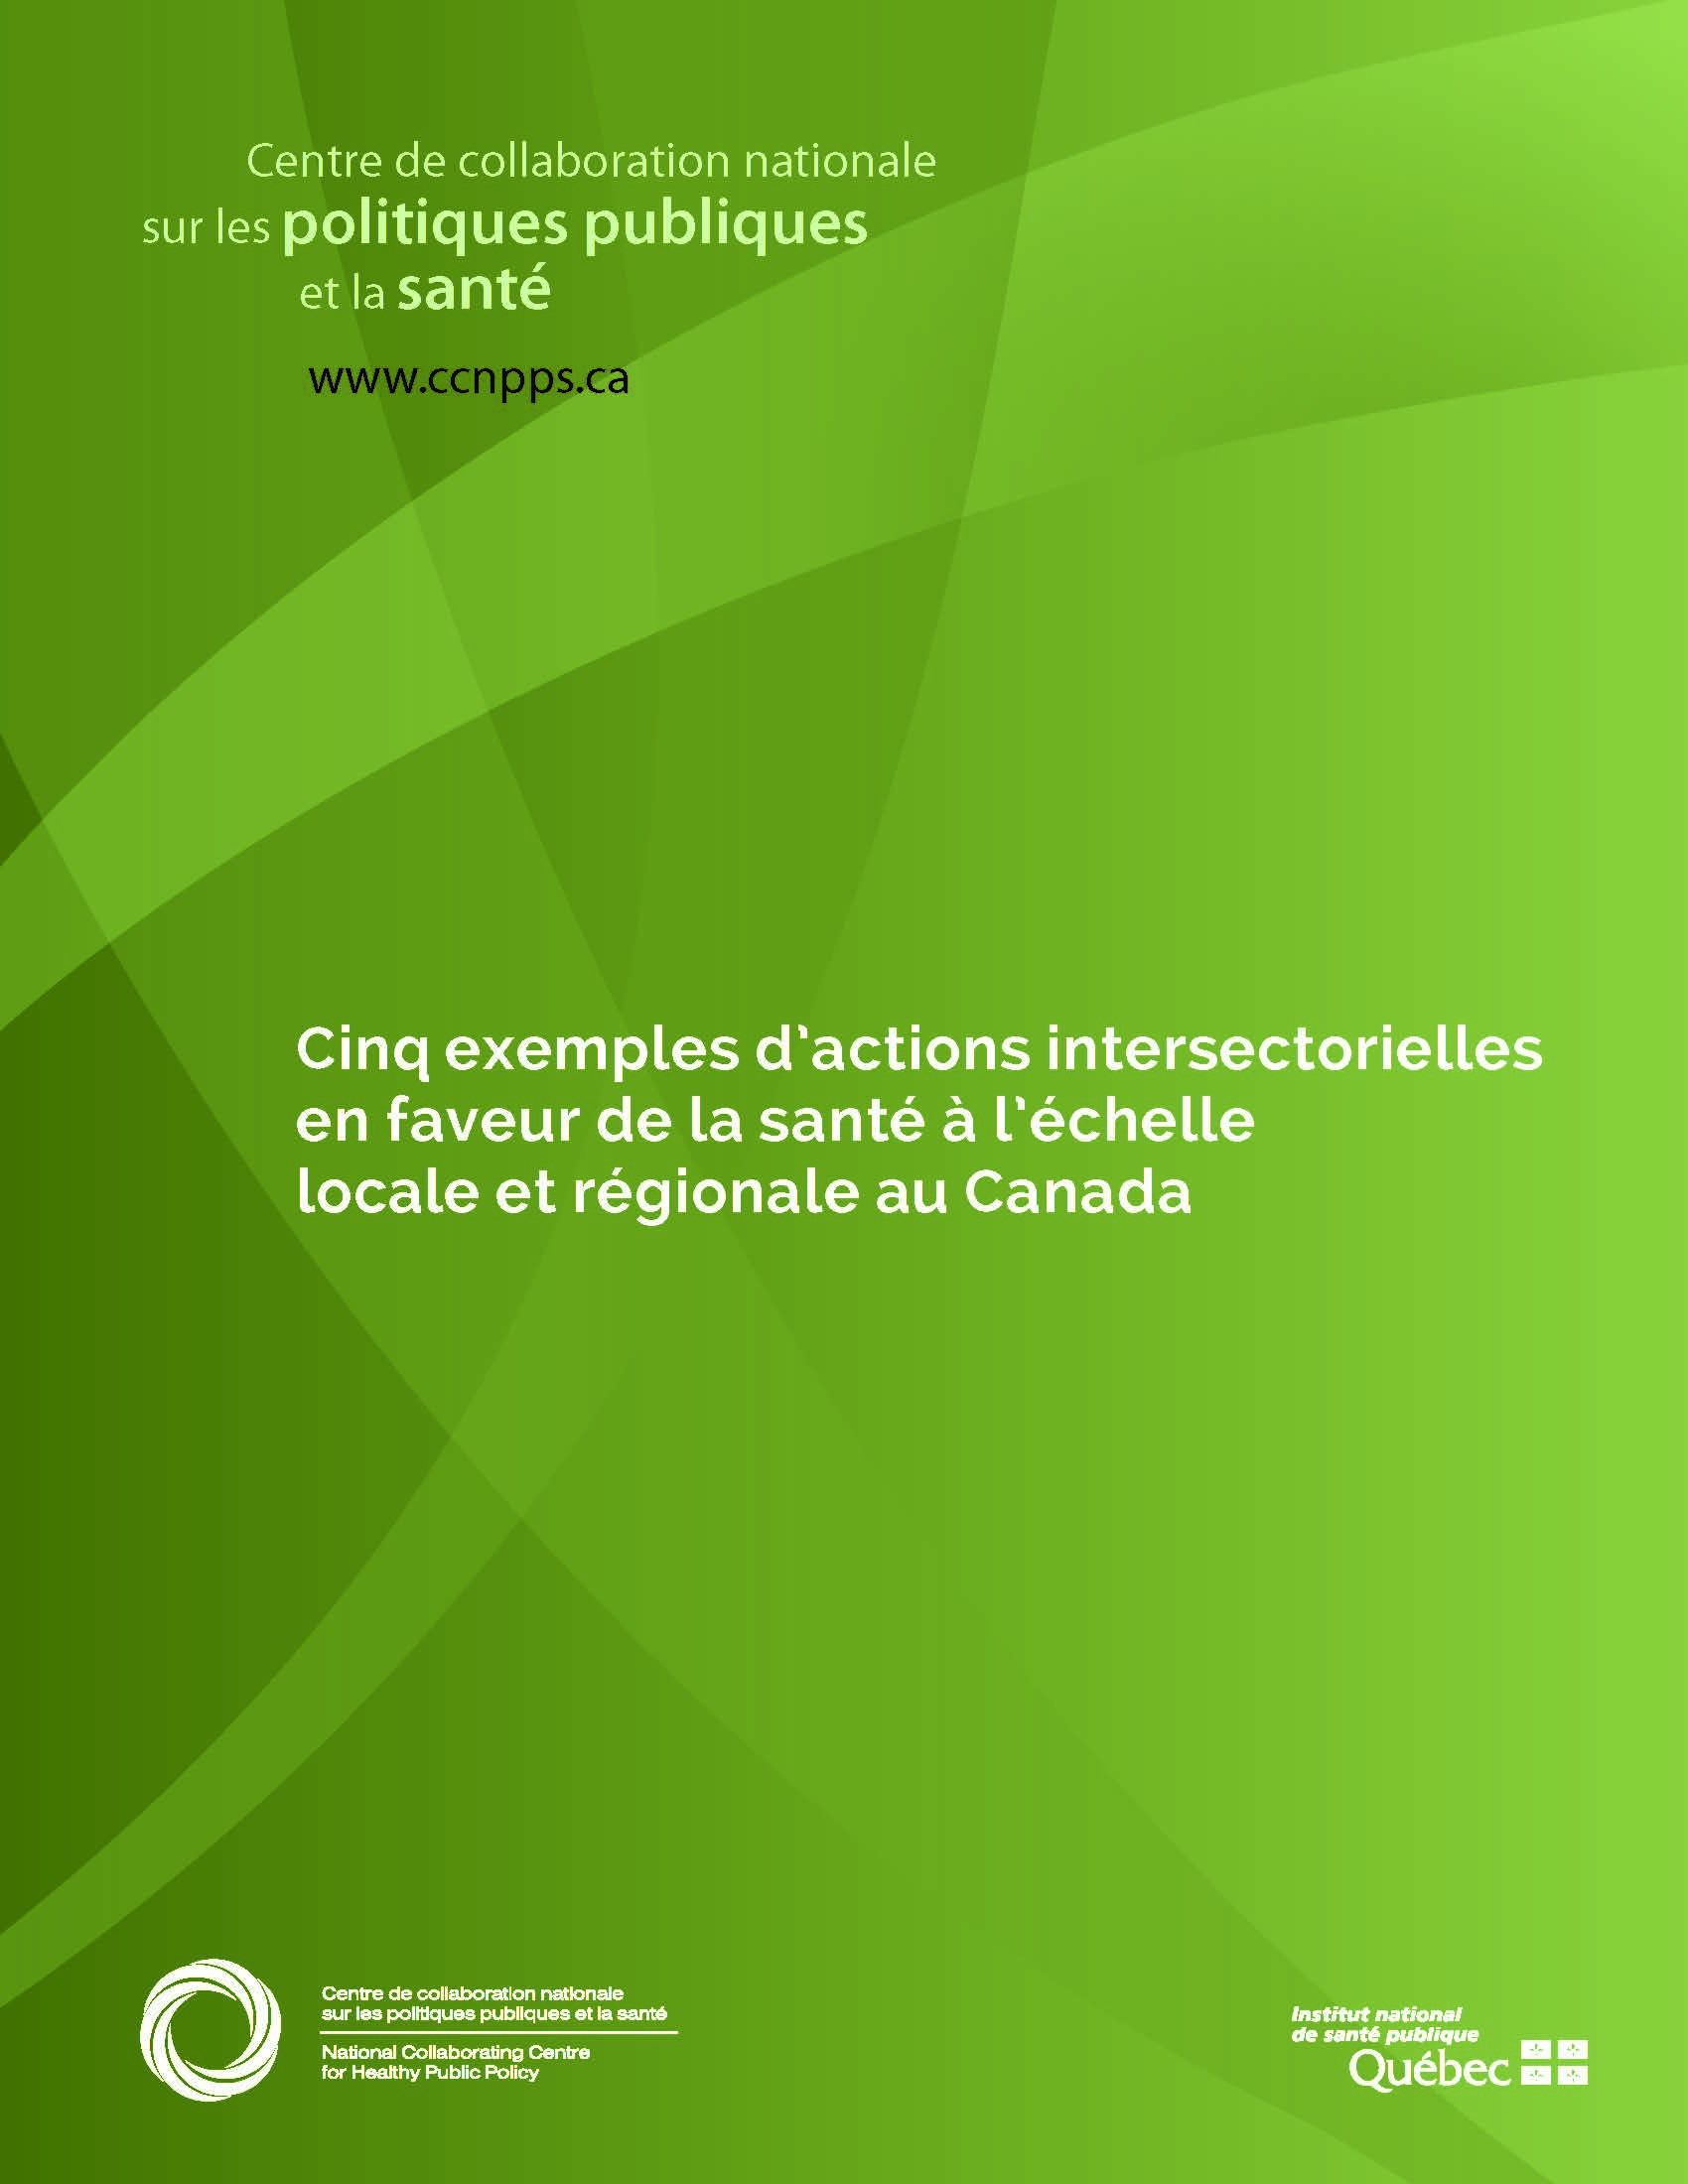 Cinq exemples d’actions intersectorielles en faveur de la santé à l’échelle locale et régionale au Canada